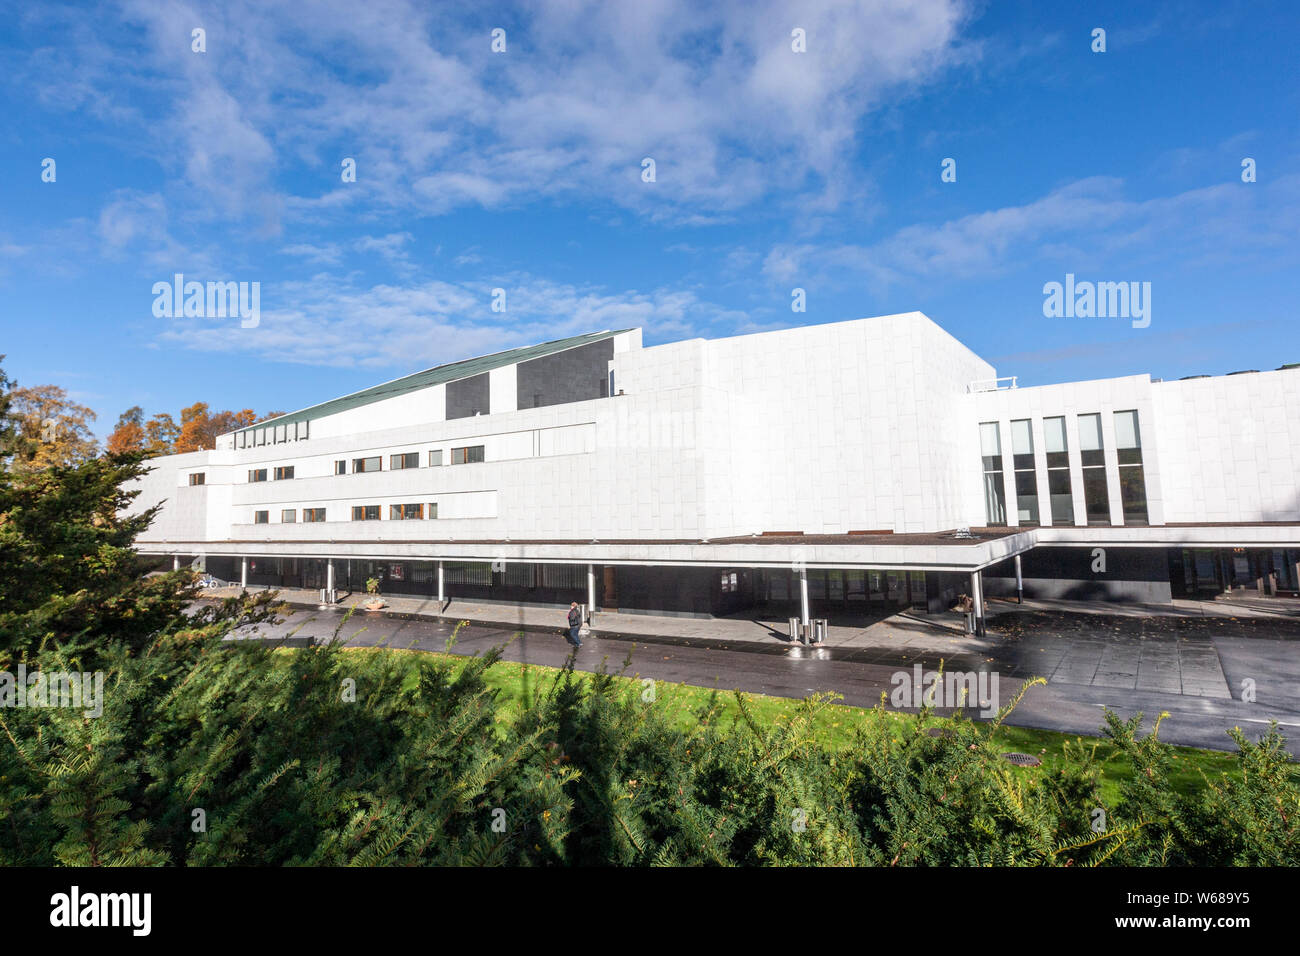 Finlandia Halle Kongress Und Veranstaltungsort Des Architekten Alvar Aalto Helsinki Finnland Stockfotografie Alamy